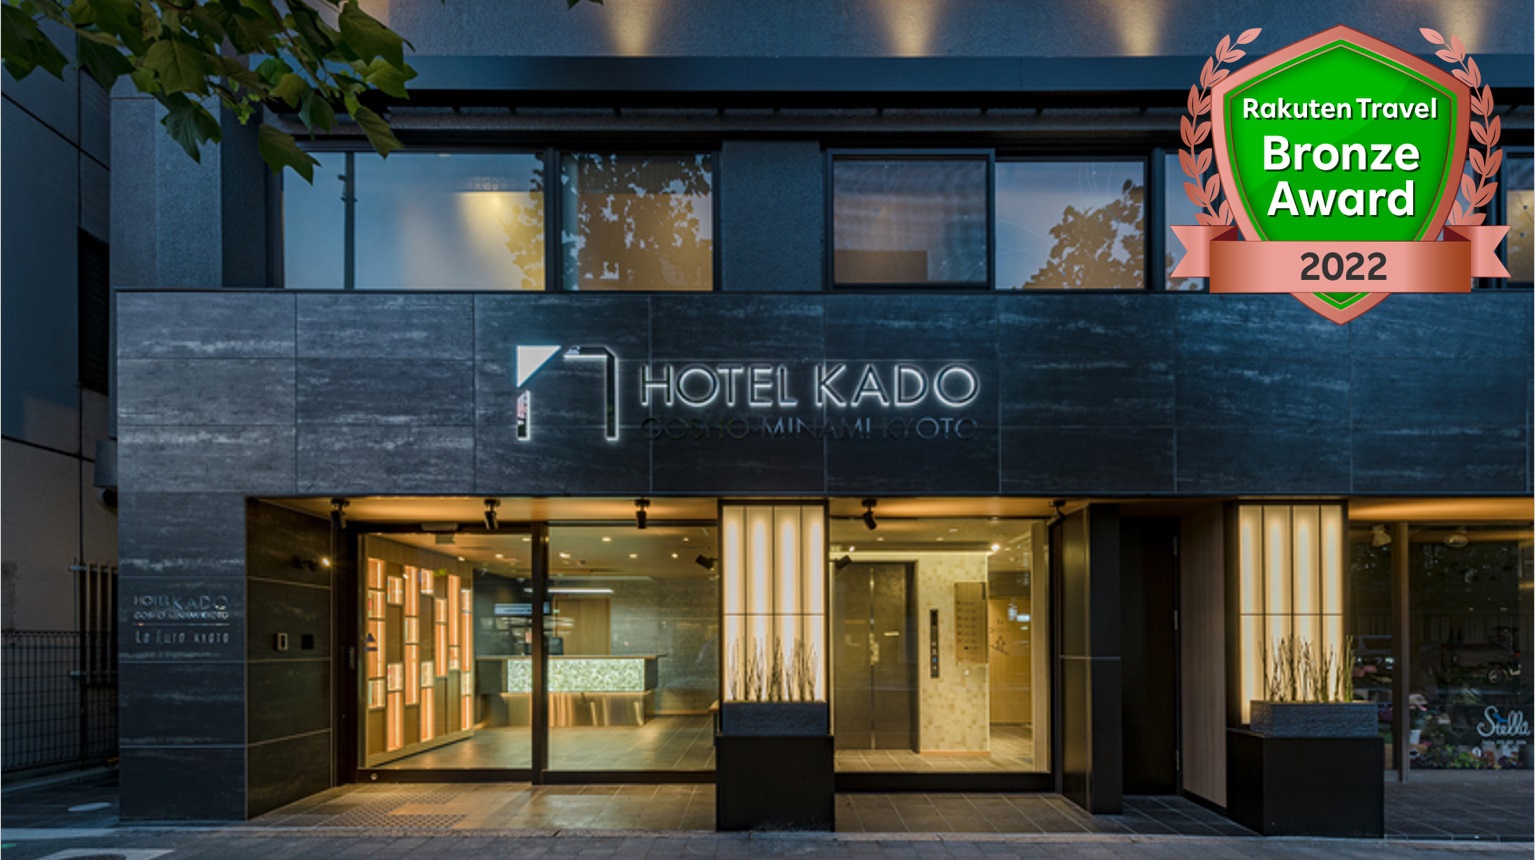 HOTEL KADO GOSHO-MINAMI KYOTO